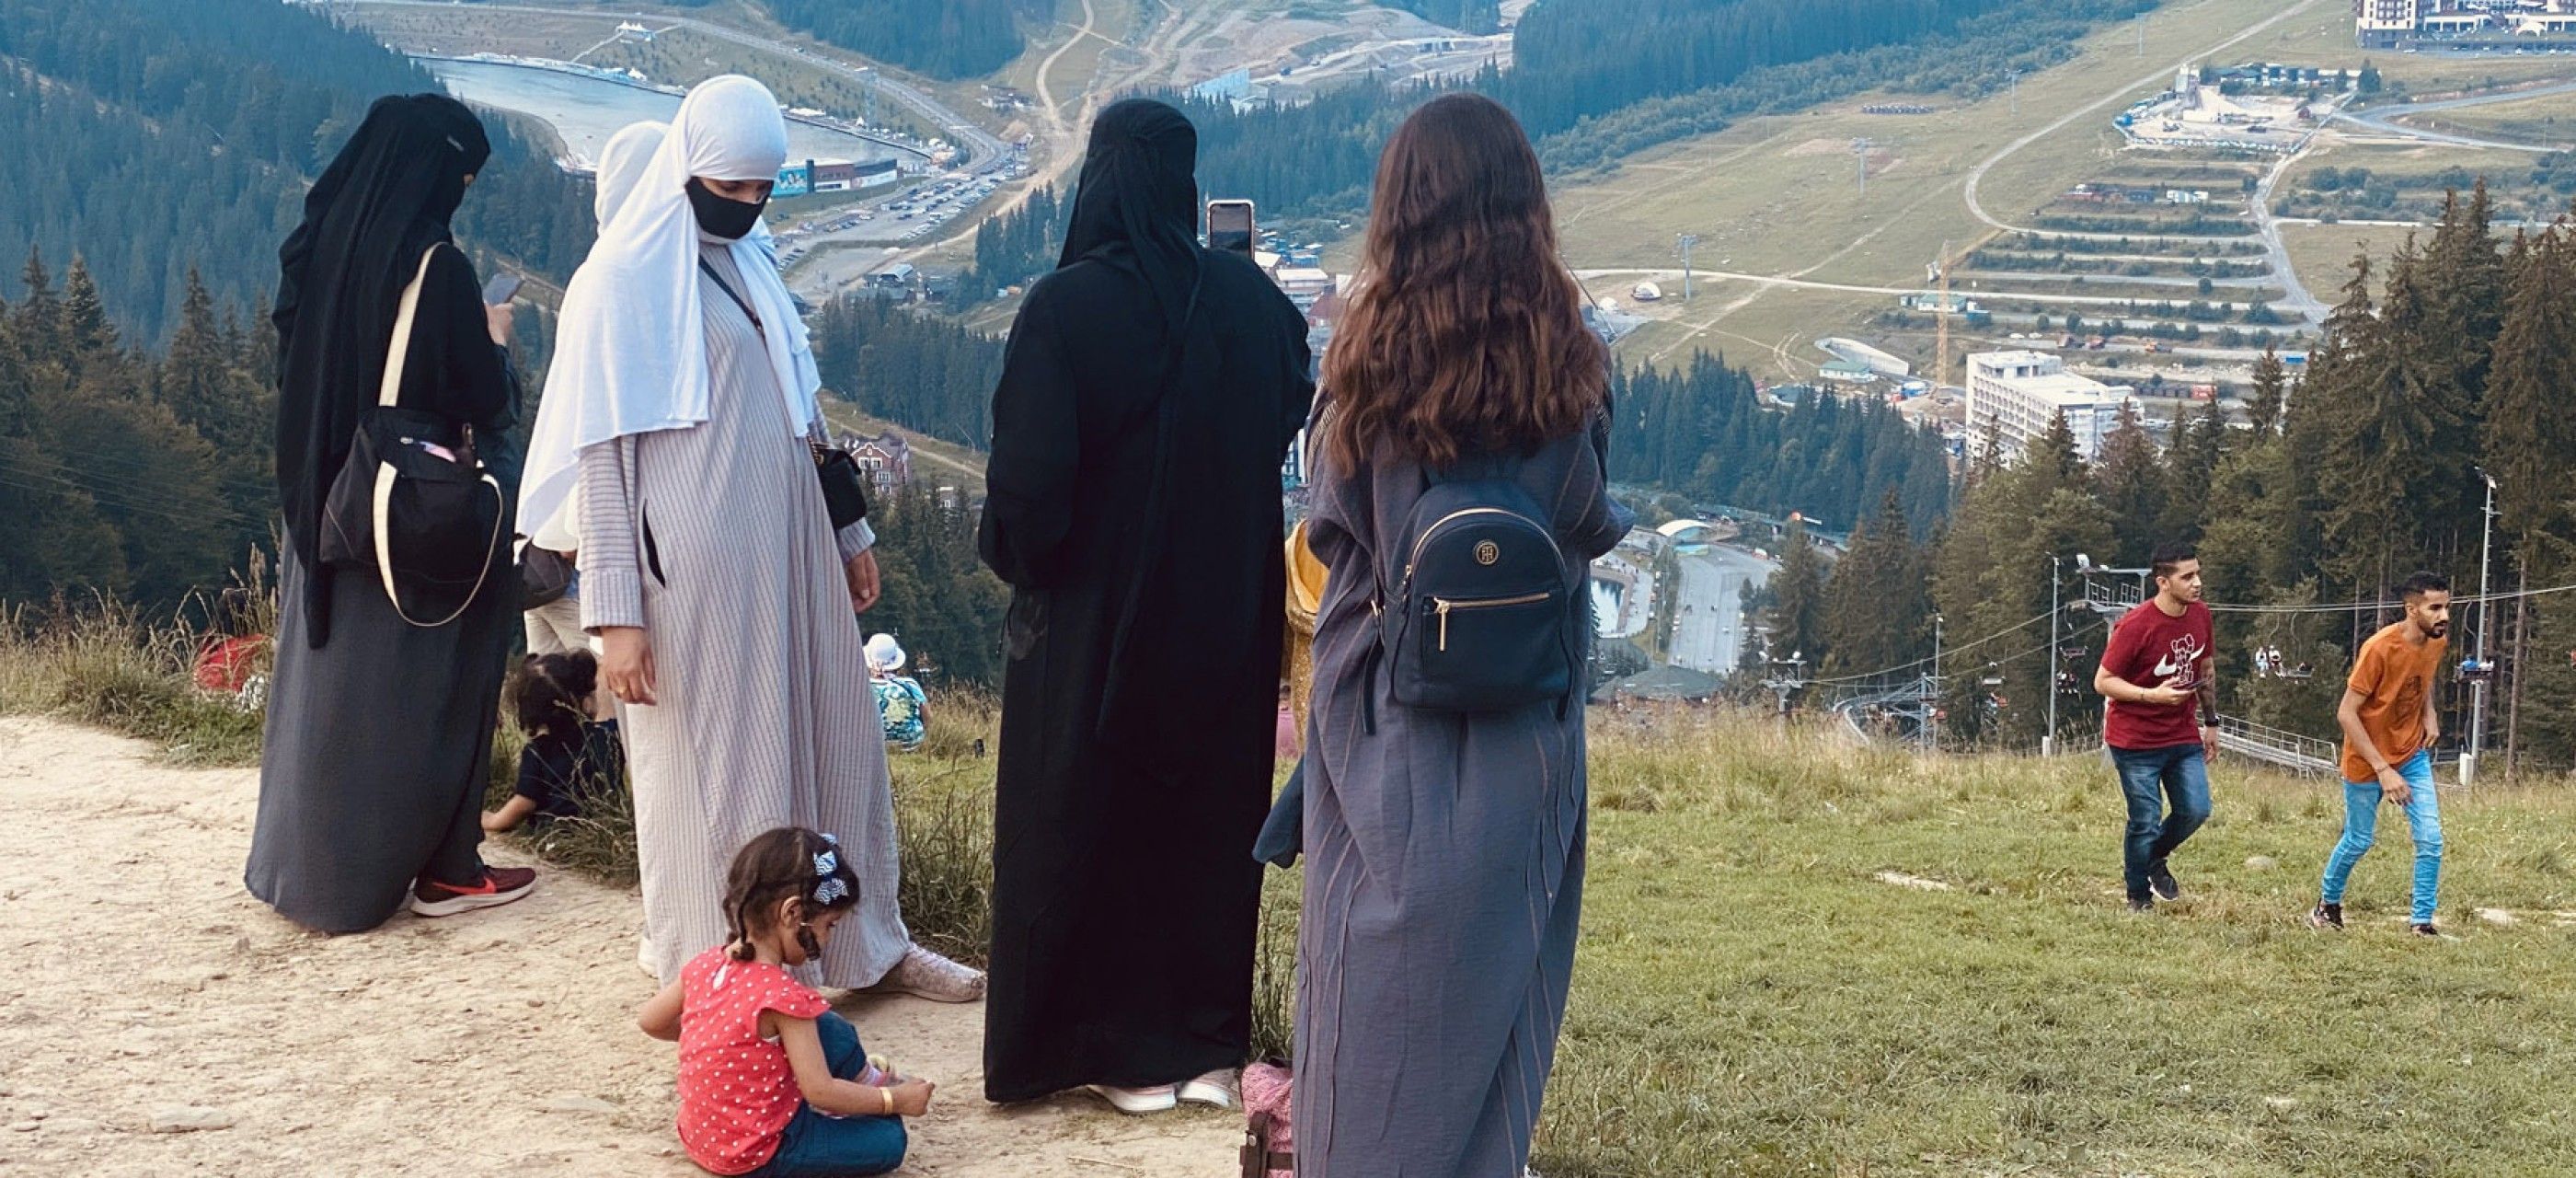 Женщины в хиджабах стали обычным событием в карпатских селах